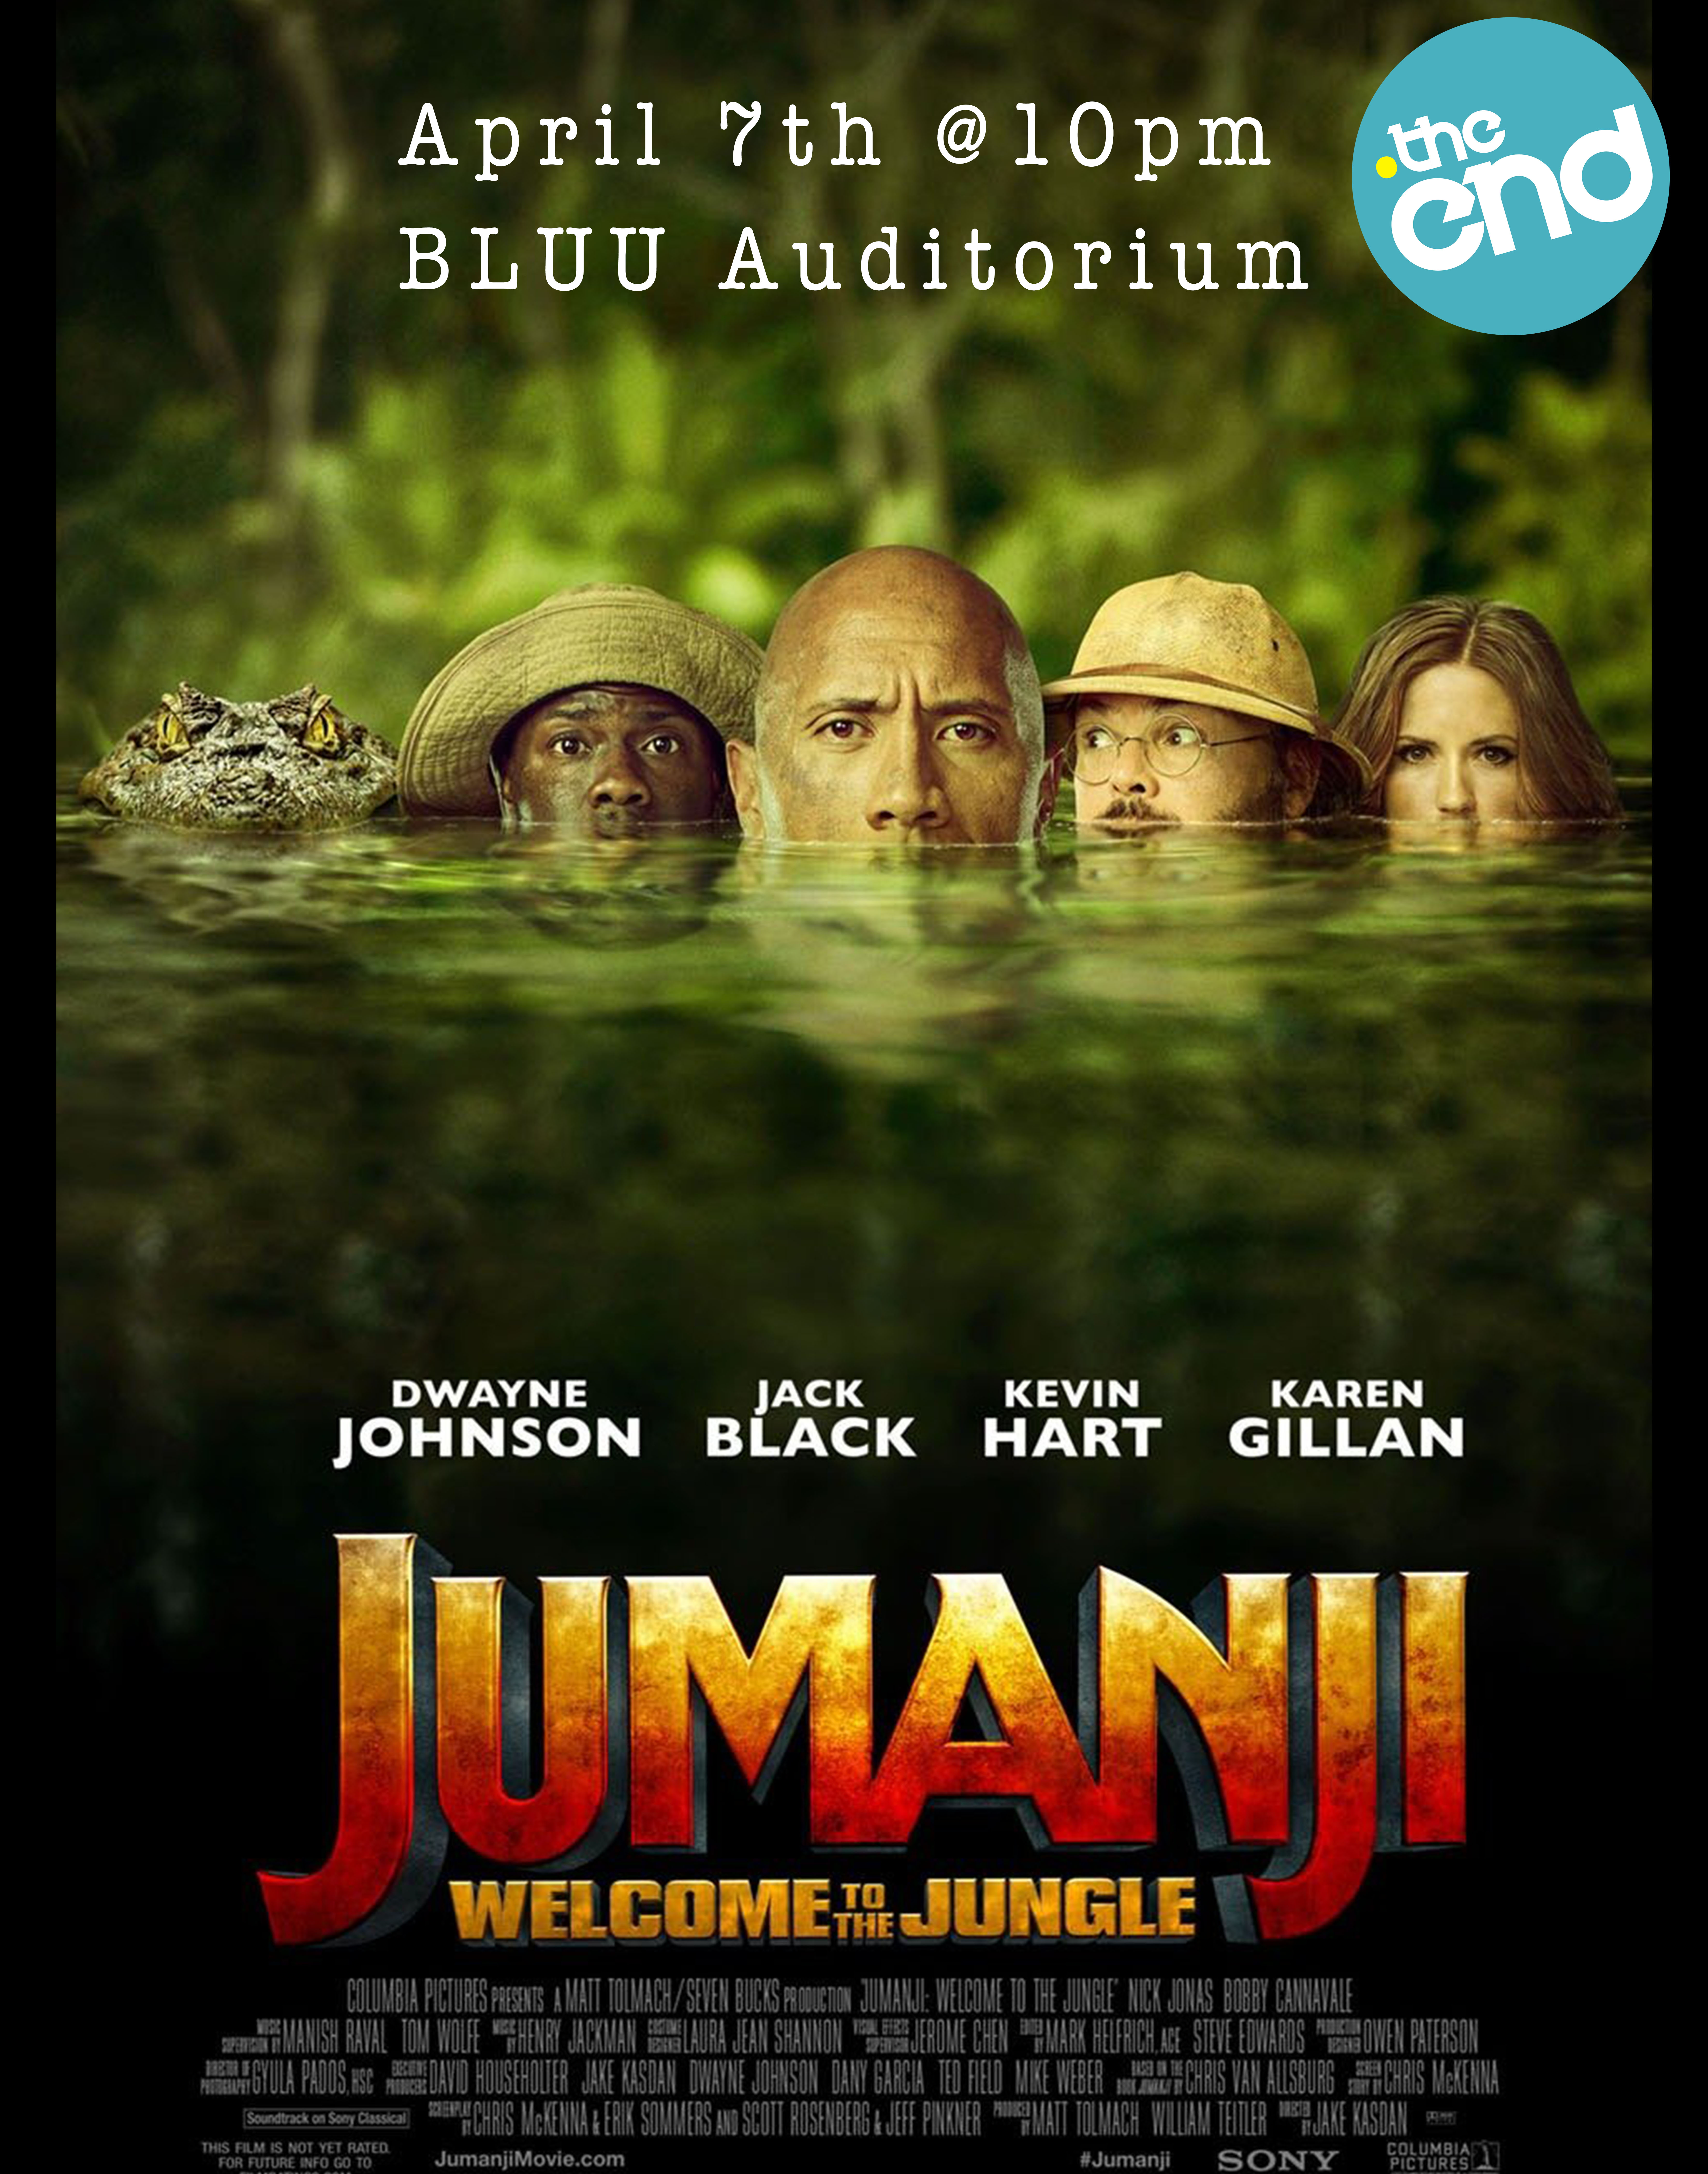 Jumanji Movie Poster